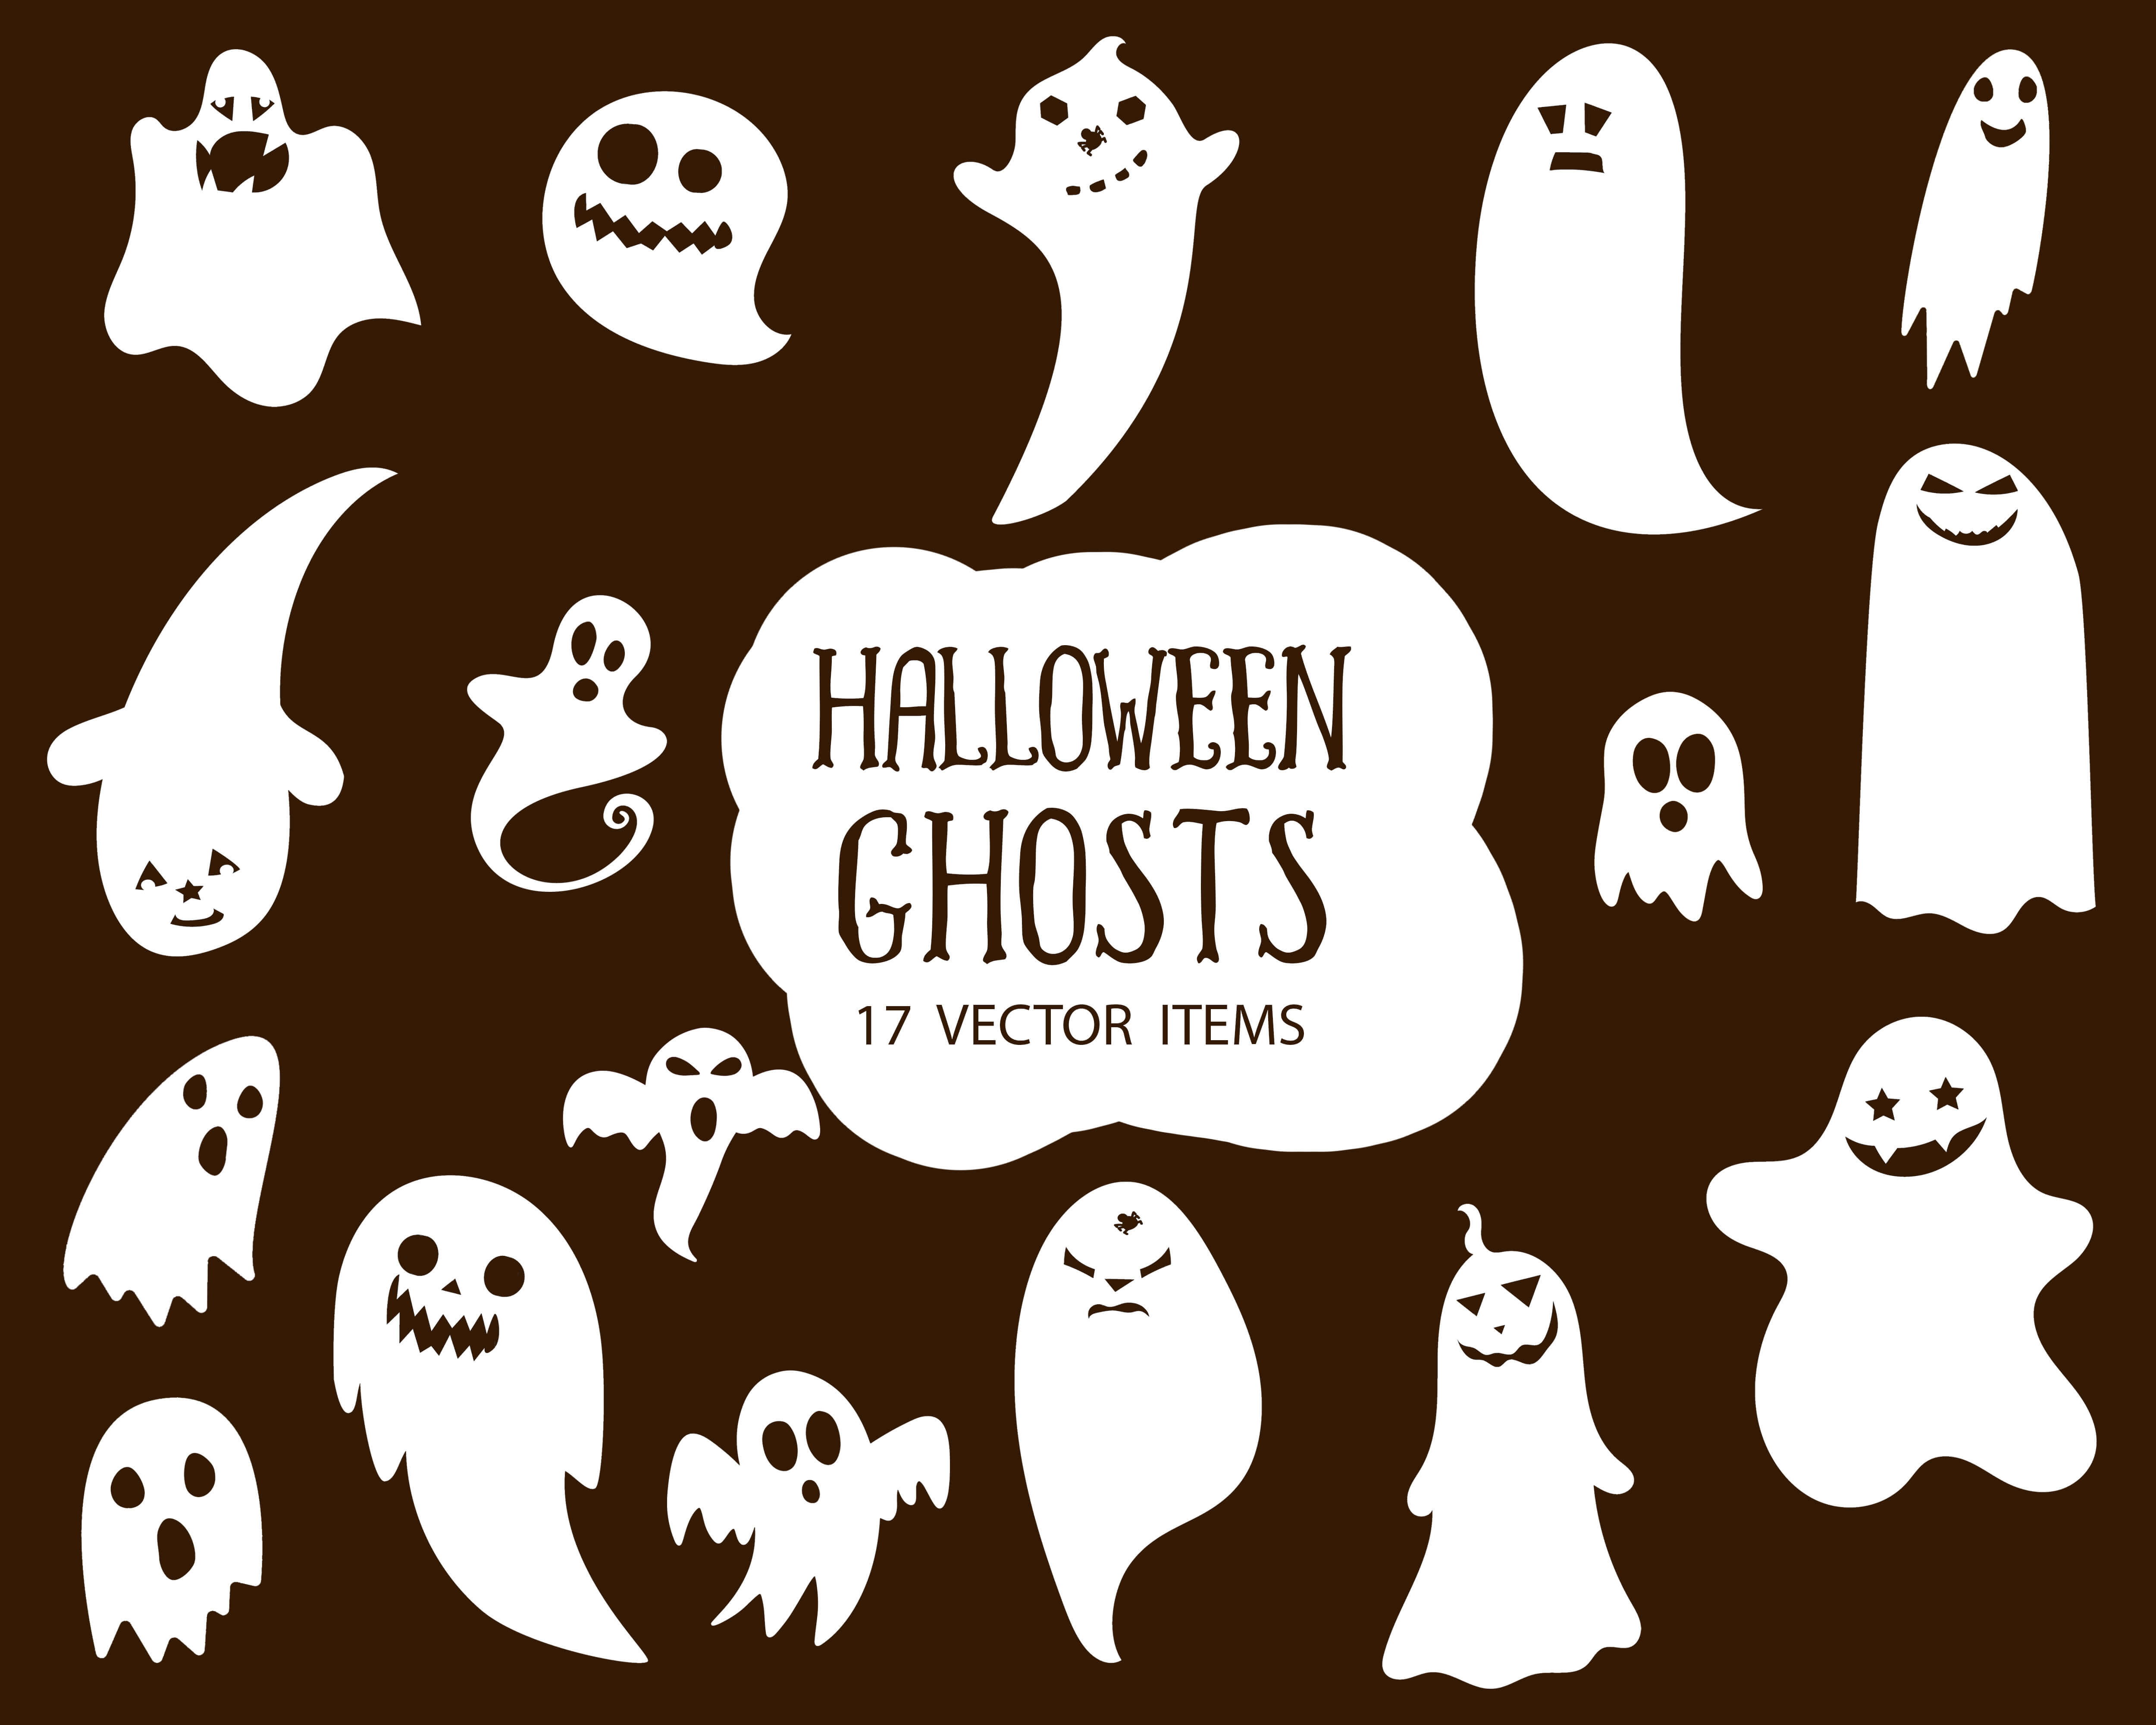 Spooky Vector Images - 17 Halloween Ghosts